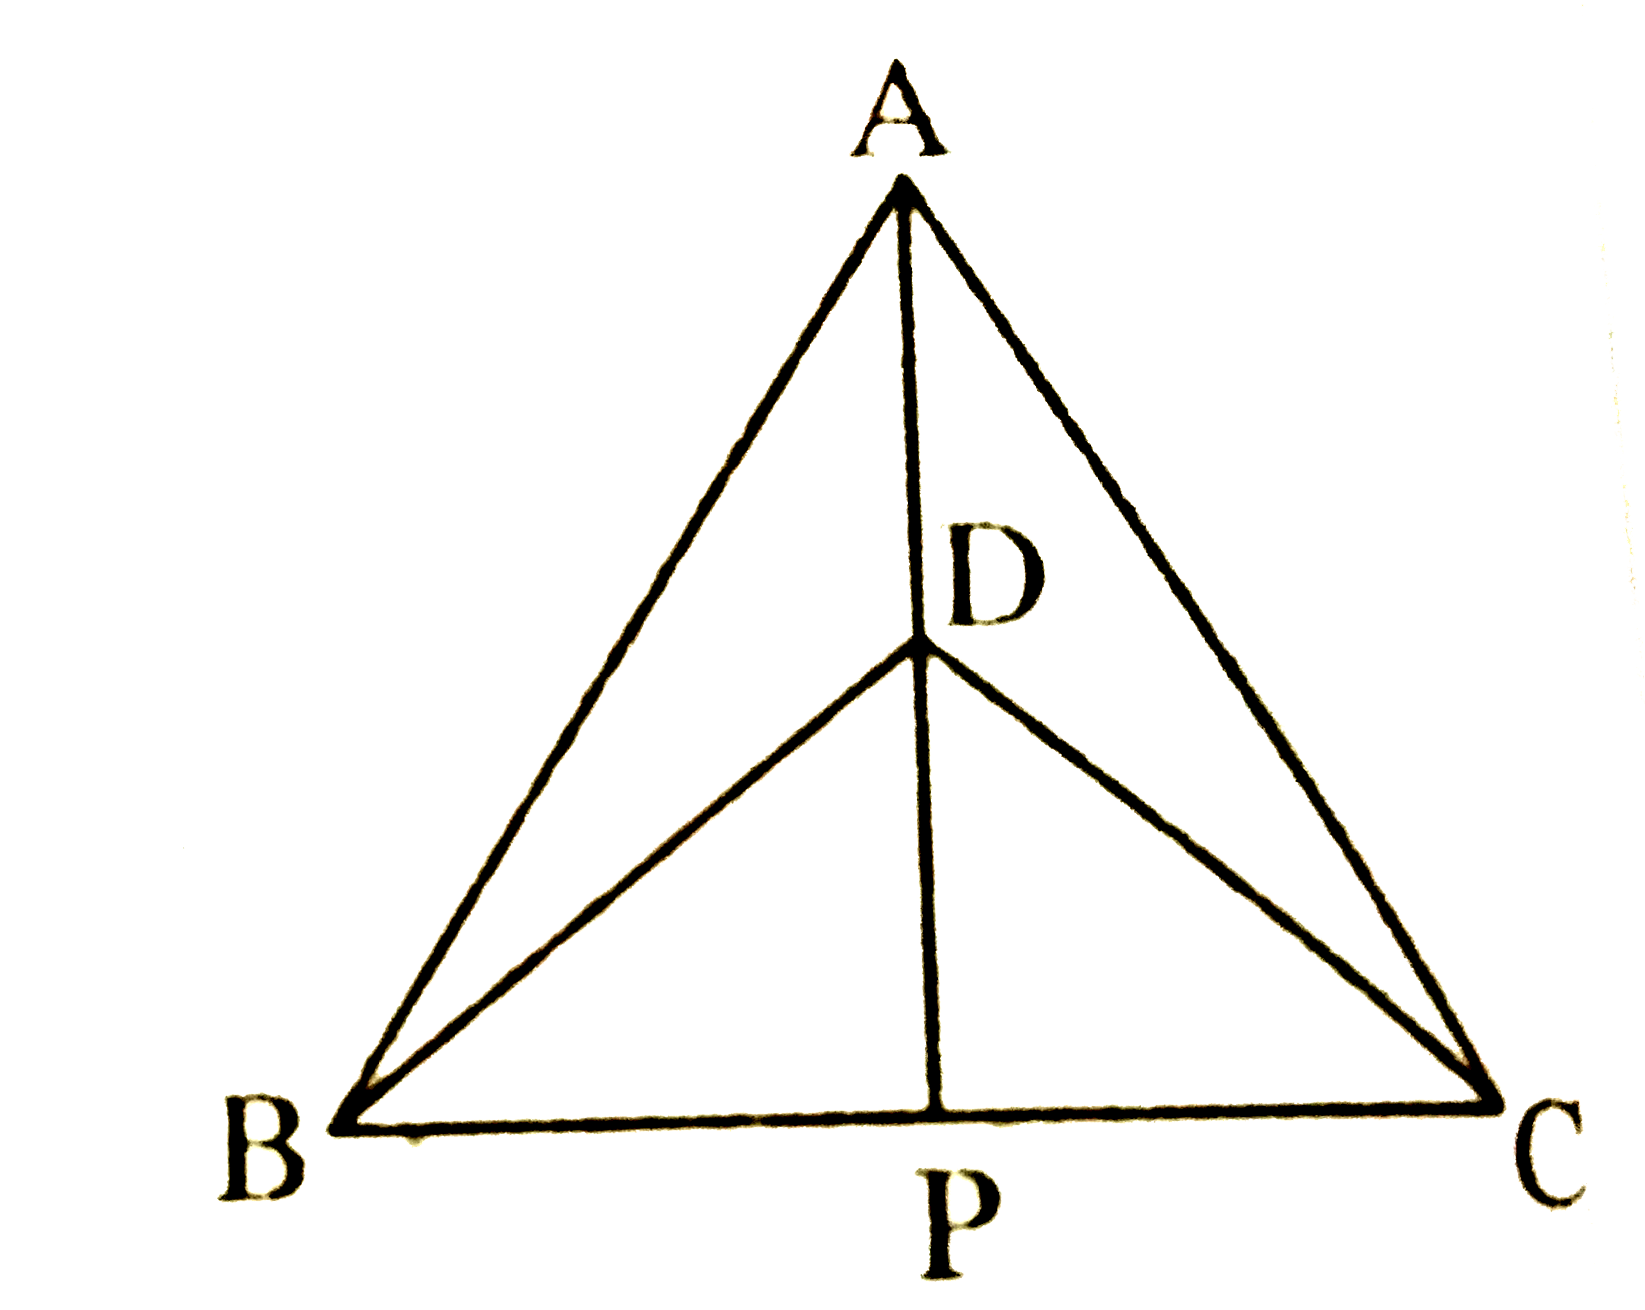 DeltaABC और DeltaDBC एक ही आधार BC पर बने दो समद्विबाहु त्रिभुज इस प्रकार हैं कि A और D भुजा BC के एक ही ओर स्थित हैं (देखिए चित्र) | यदि AD बढ़ाने पर BC को P पर प्रतिच्छेद करें, तो दर्शाइए कि      DeltaABP~=DeltaACP